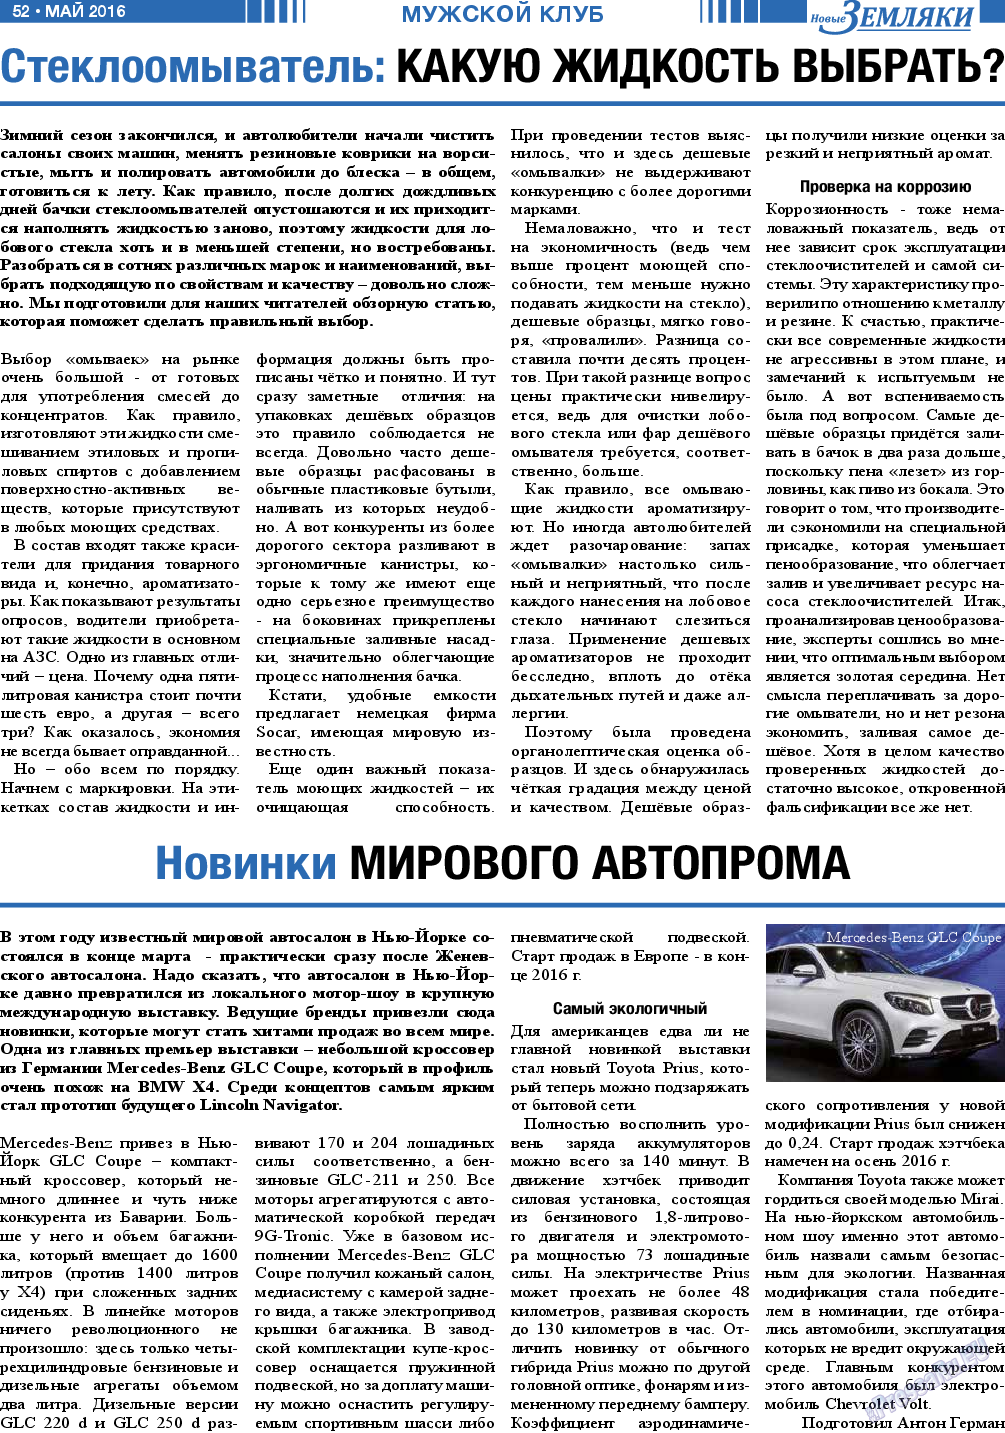 Новые Земляки, газета. 2016 №5 стр.52